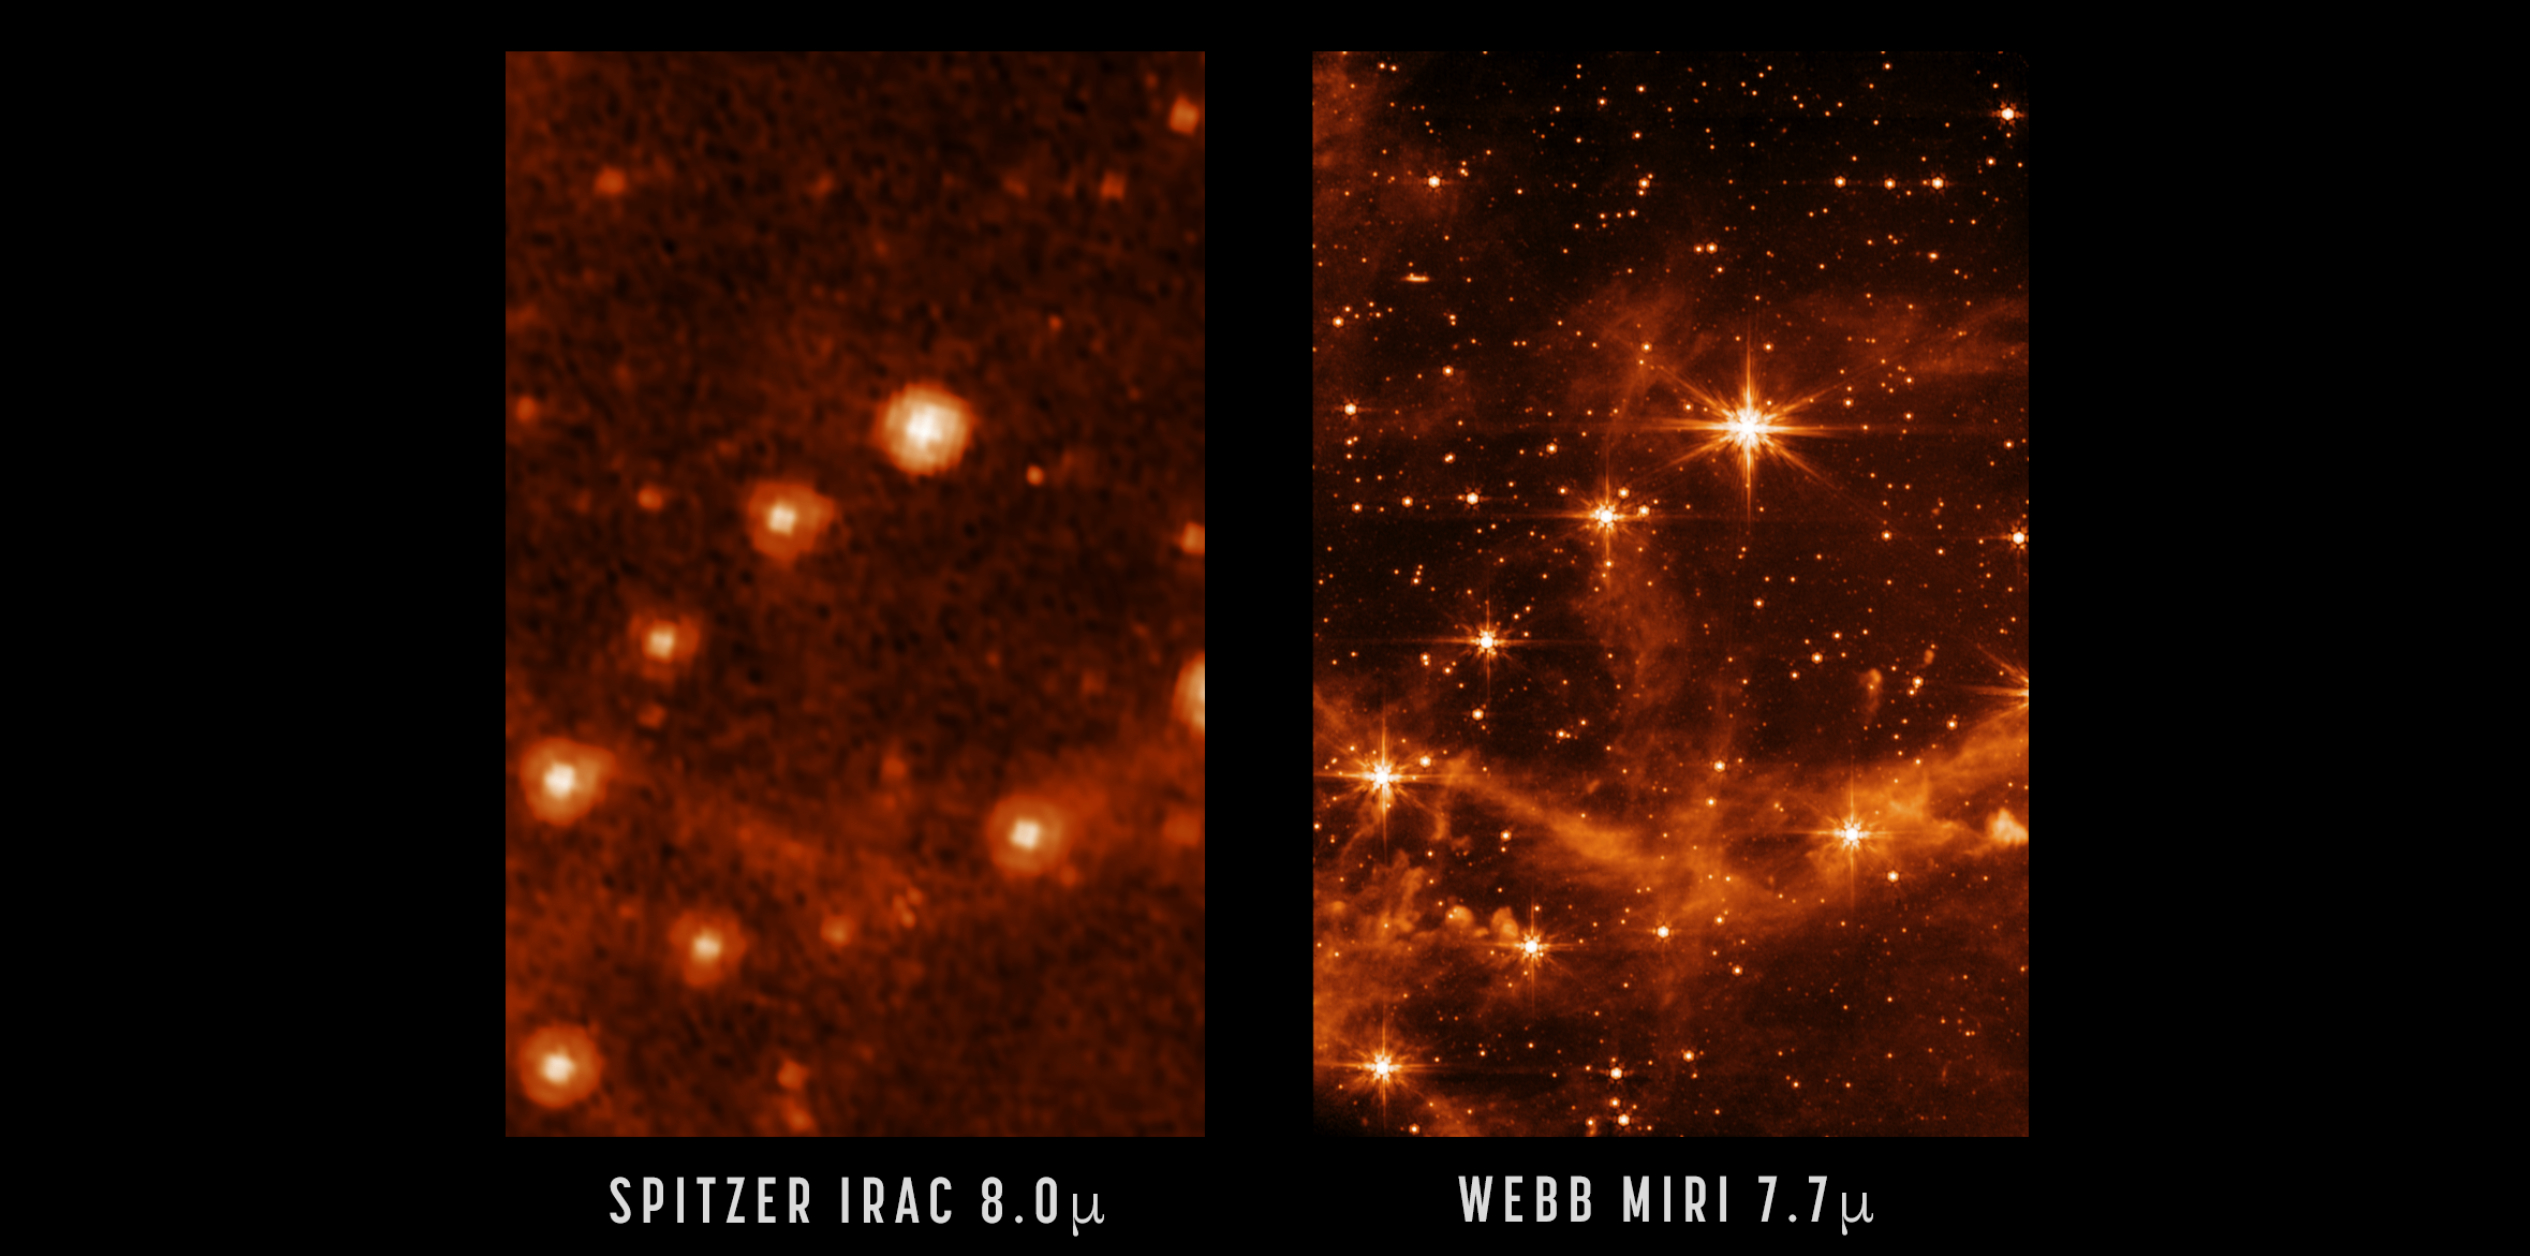 左：由史匹哲太空望遠鏡（已退役）拍攝的部分大麥哲倫星雲；右：韋布上月發布以中紅外線儀(MIRI)所拍攝的同一天區，可見細節更多更清晰。                                          圖片鳴謝: Spitzer: NASA/JPL-Caltech; MIRI: NASA/ESA/CSA/STScI